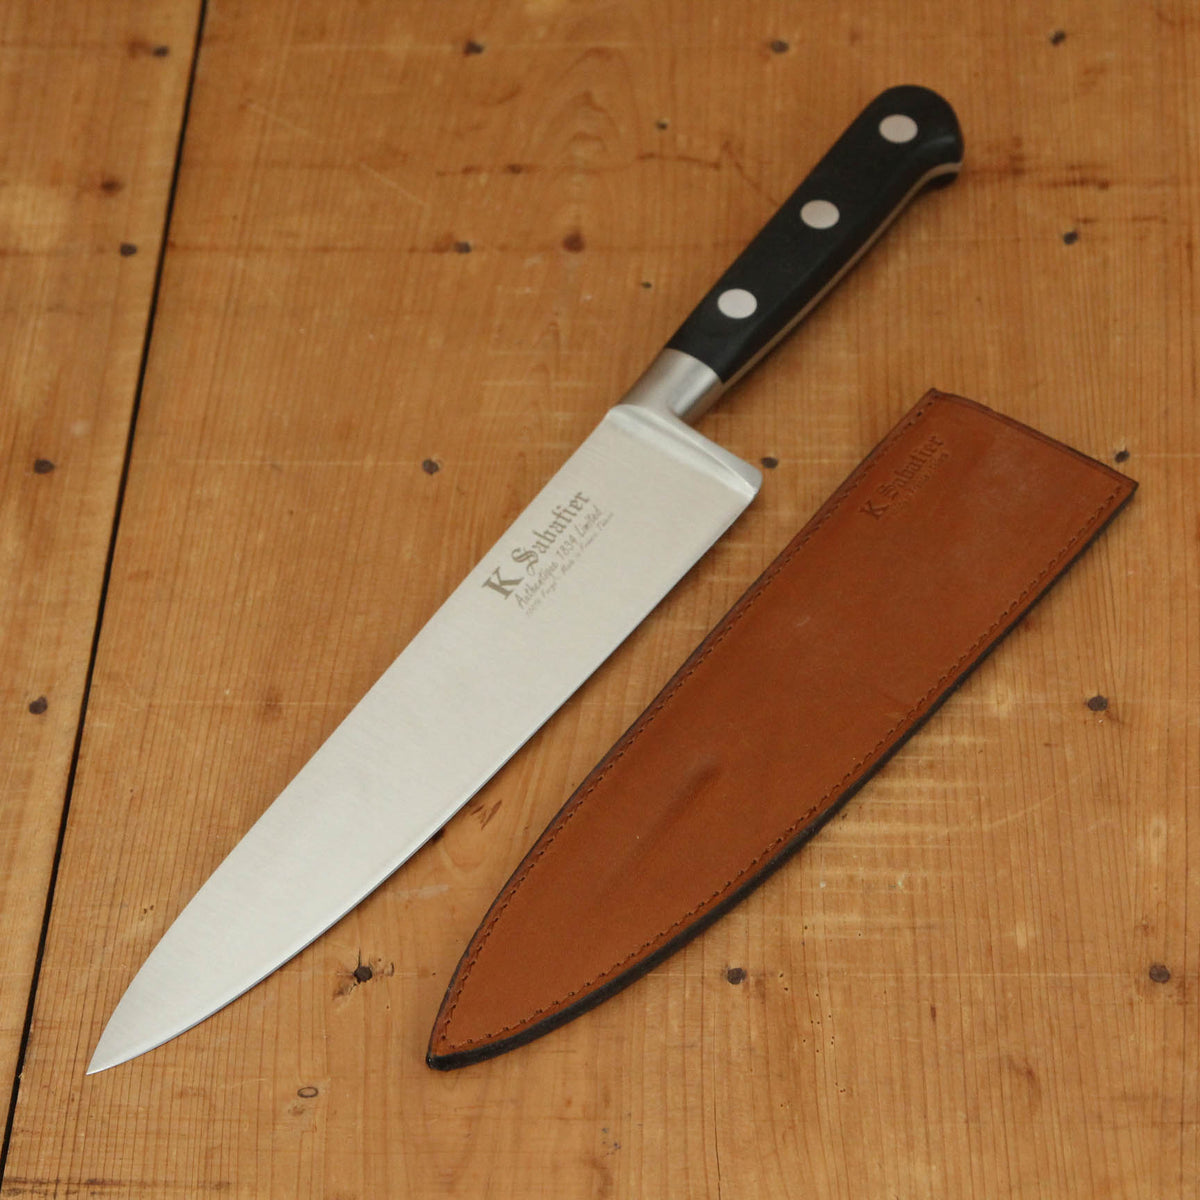 V Sabatier Knife Block with Five Knives